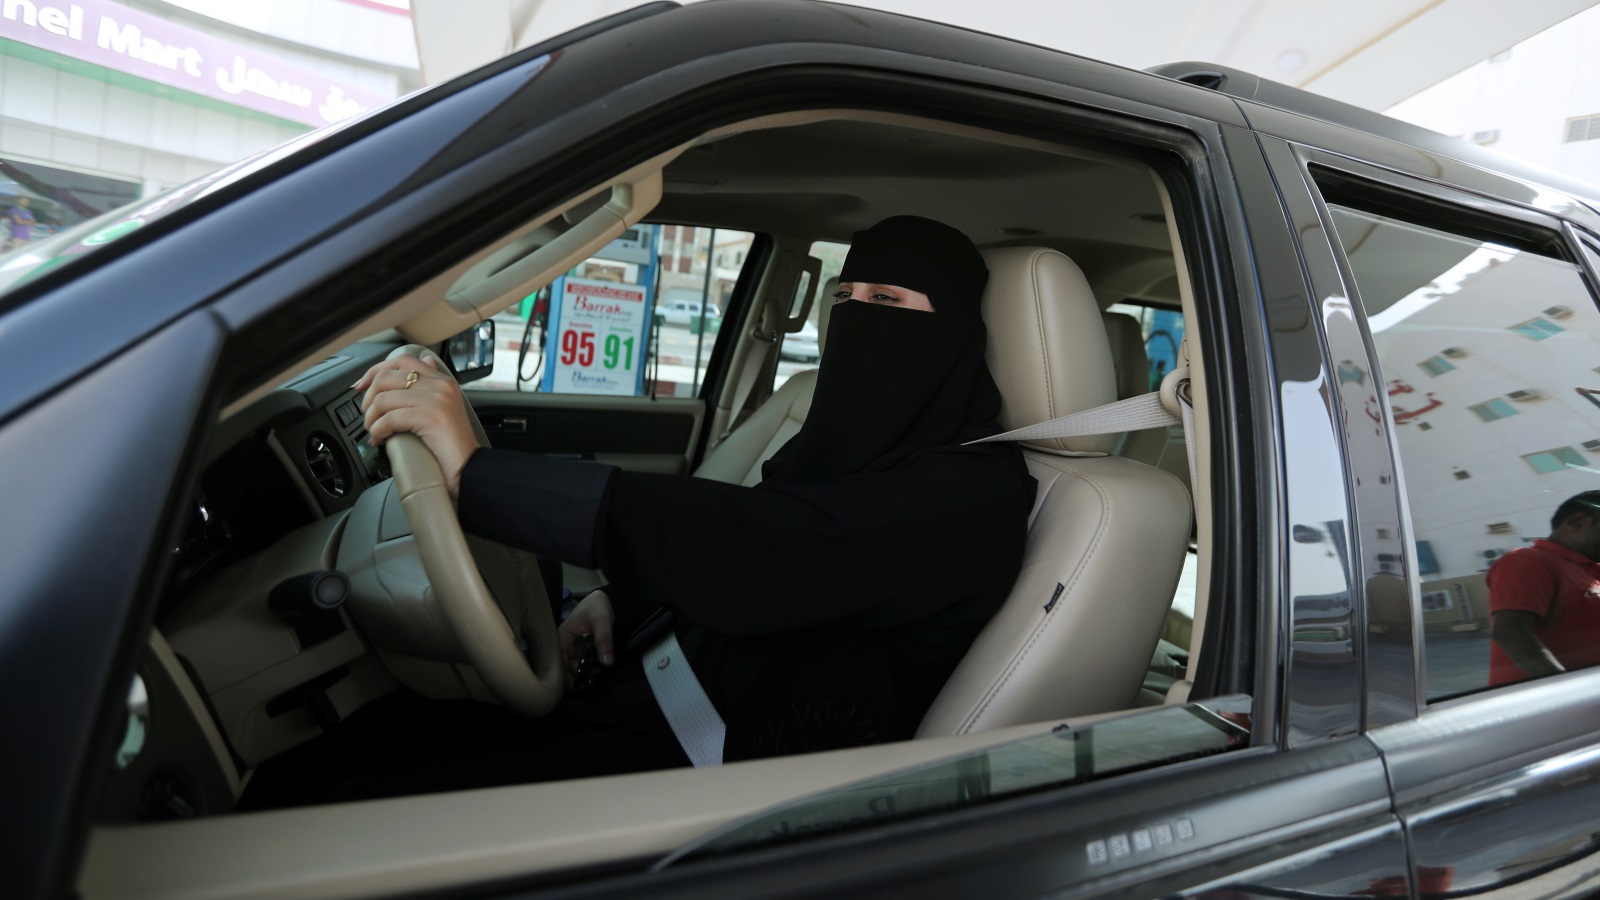 ‪هيومن رايتس ووتش: على السعودية إطلاق سراح ناشطات قيادة المرأة (رويترز)‬ هيومن رايتس ووتش: على السعودية إطلاق سراح ناشطات قيادة المرأة (رويترز)